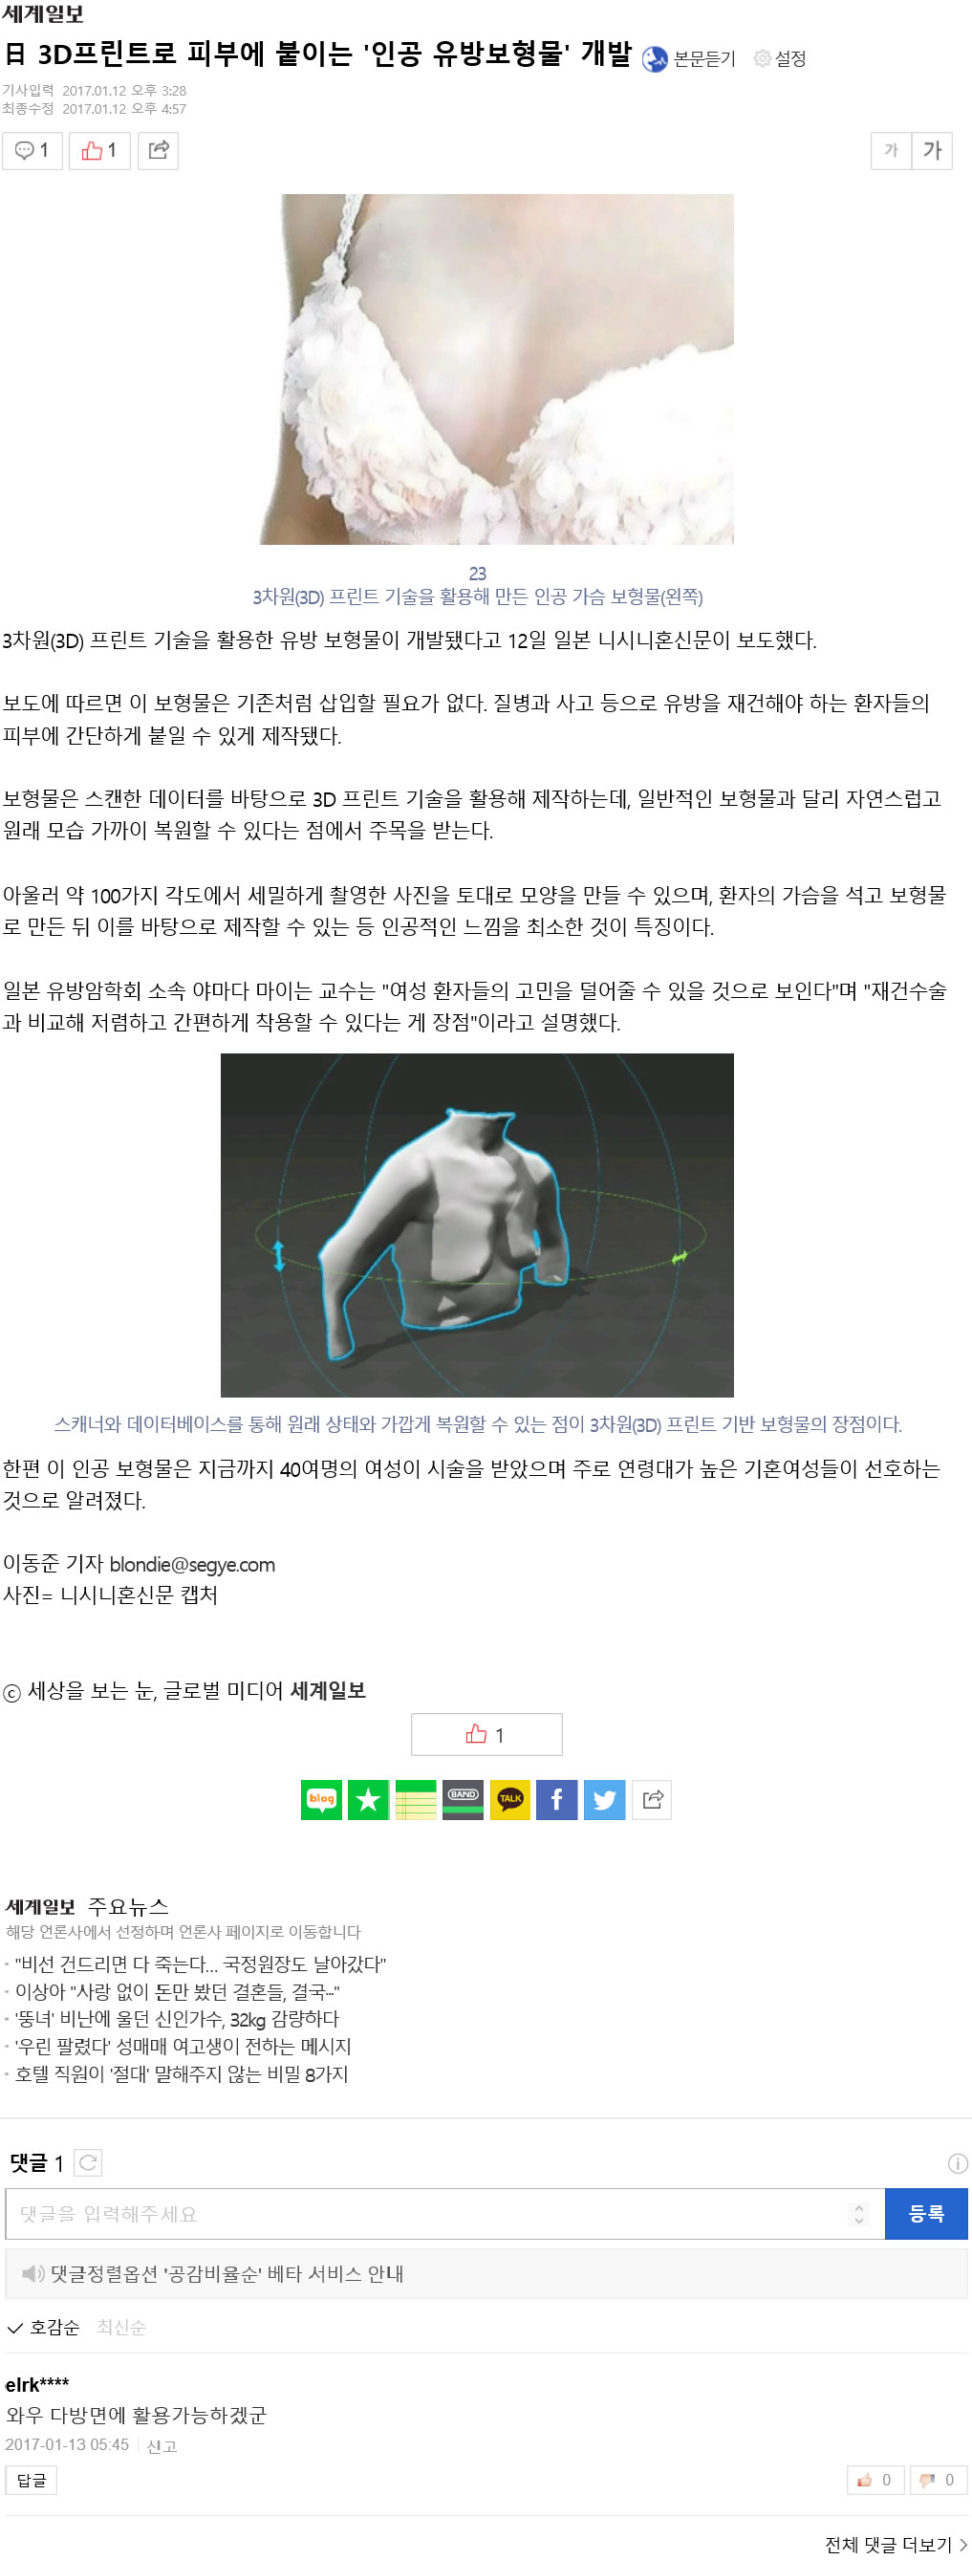 韓国の「世界日報」というサイトで人工乳房が紹介されました。